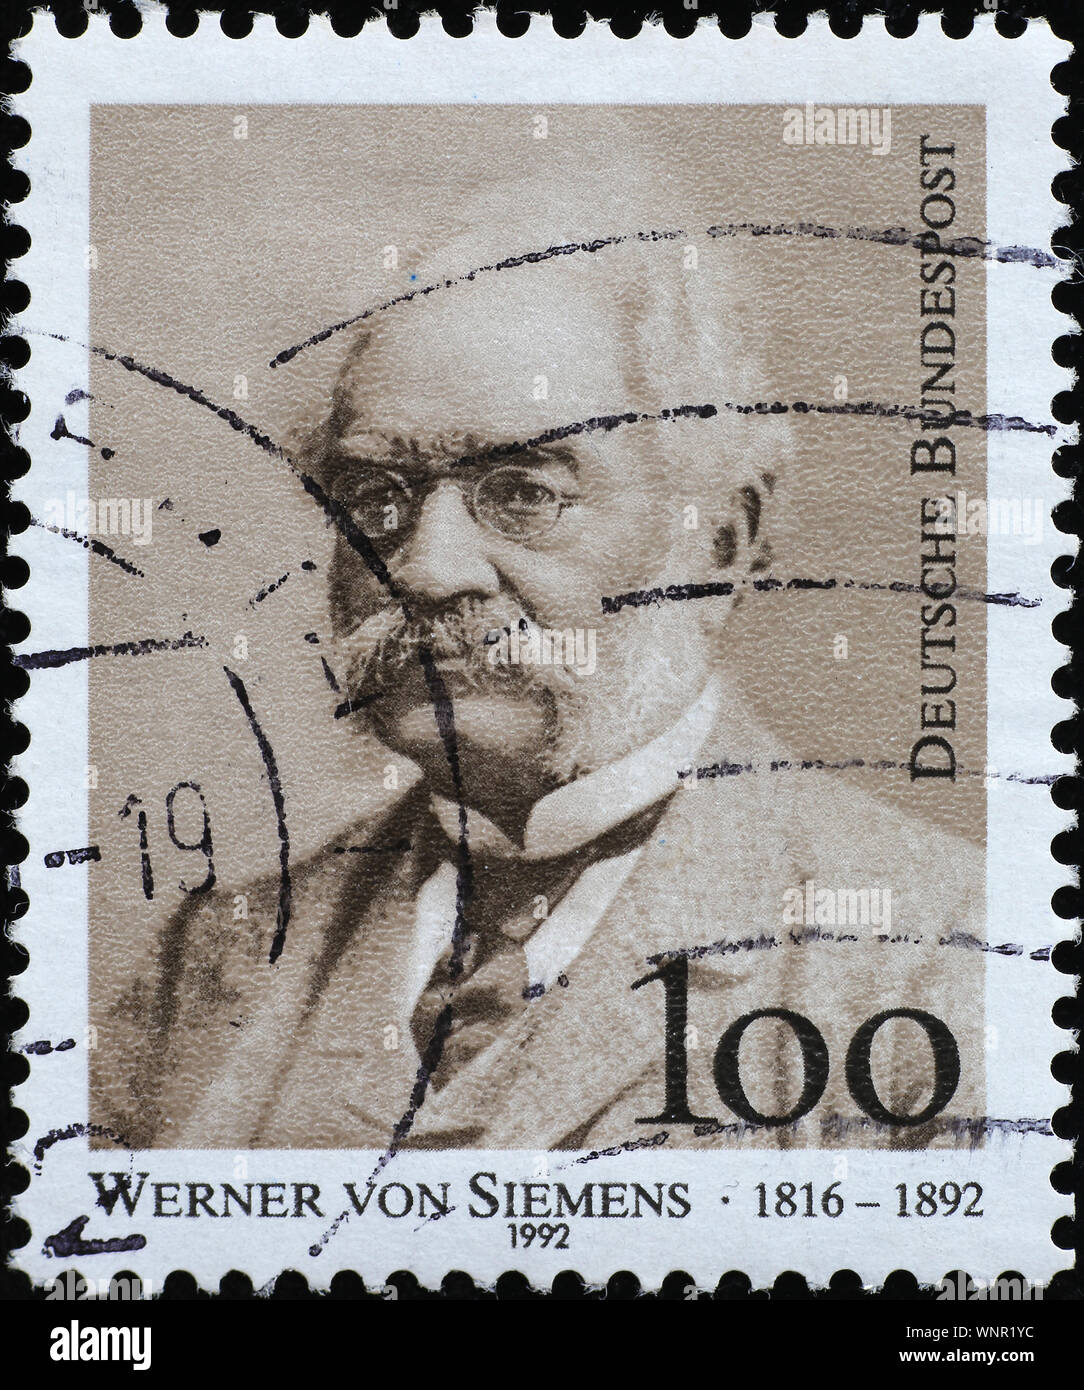 Werner von Siemens en el sello alemán Foto de stock